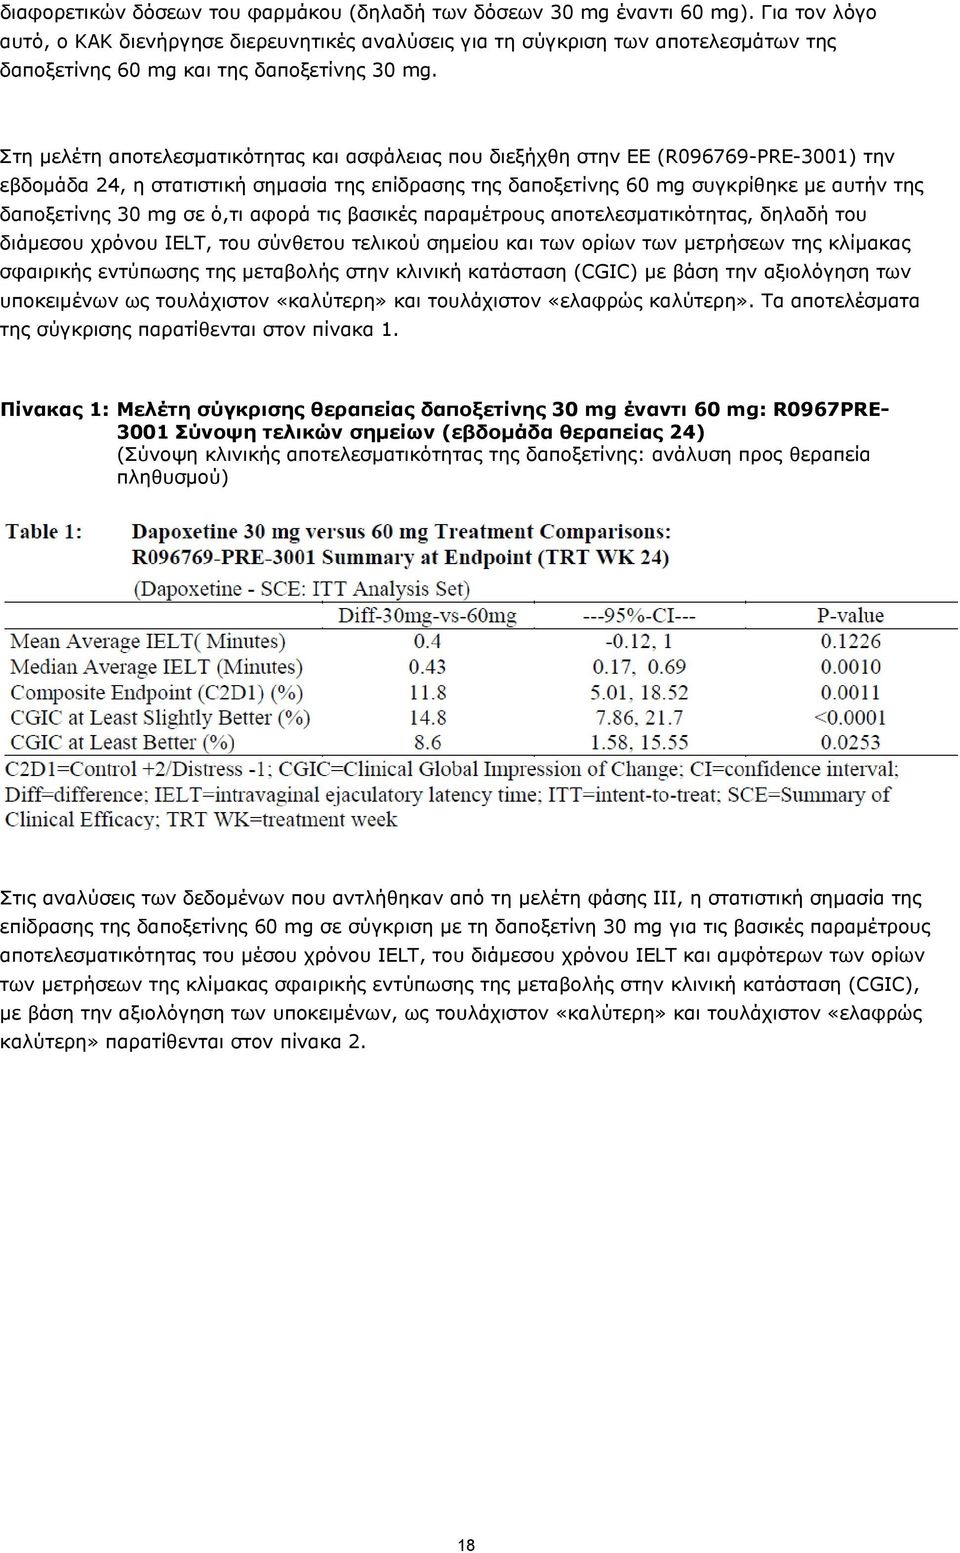 Στη μελέτη αποτελεσματικότητας και ασφάλειας που διεξήχθη στην ΕΕ (R096769-PRE-3001) την εβδομάδα 24, η στατιστική σημασία της επίδρασης της δαποξετίνης 60 mg συγκρίθηκε με αυτήν της δαποξετίνης 30